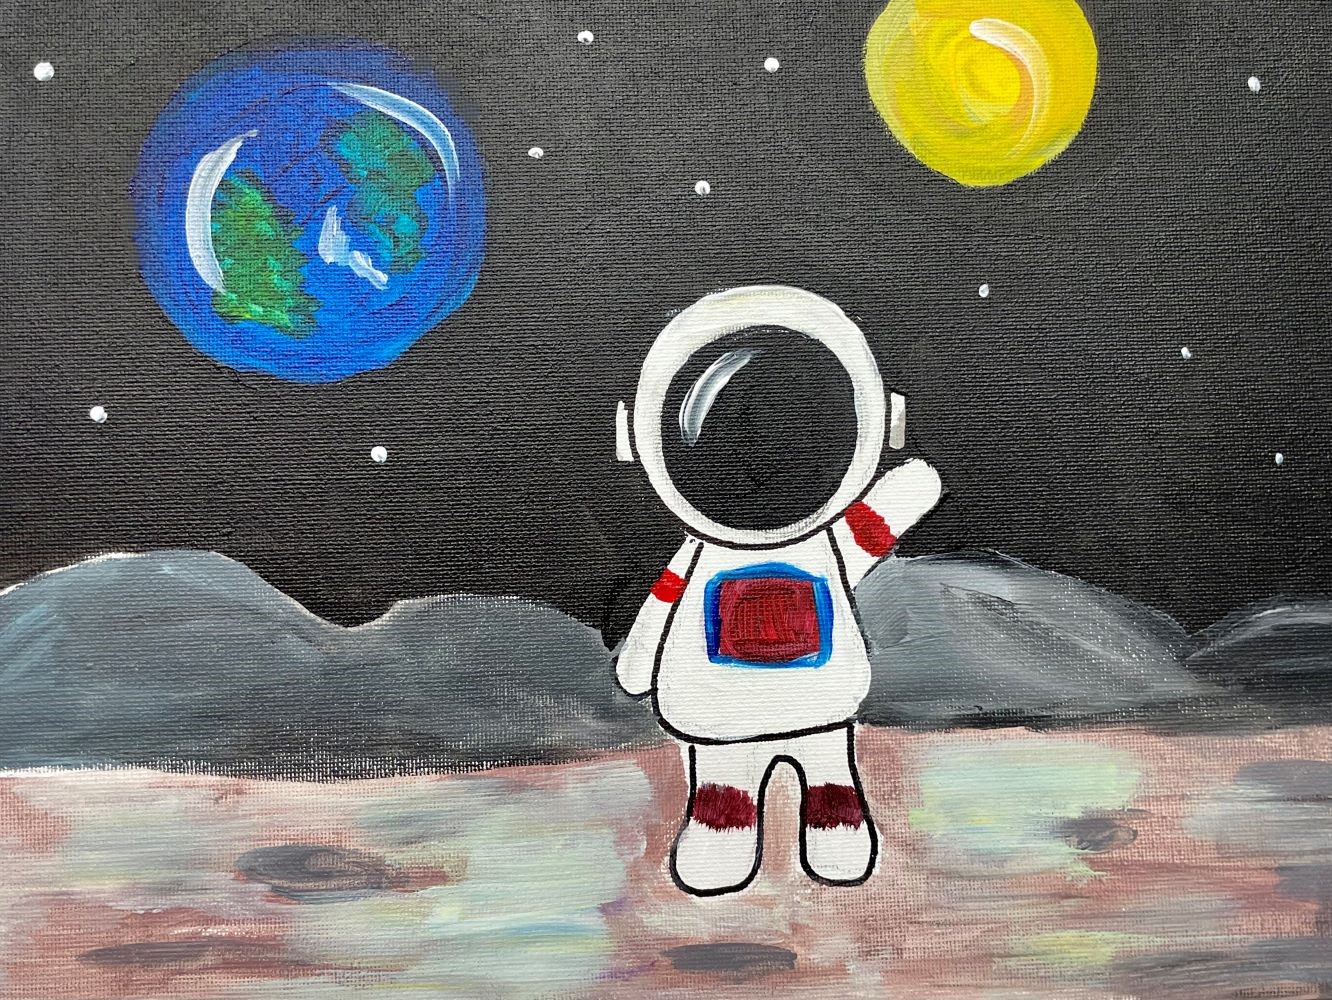 ABK Astronaut on the Moon